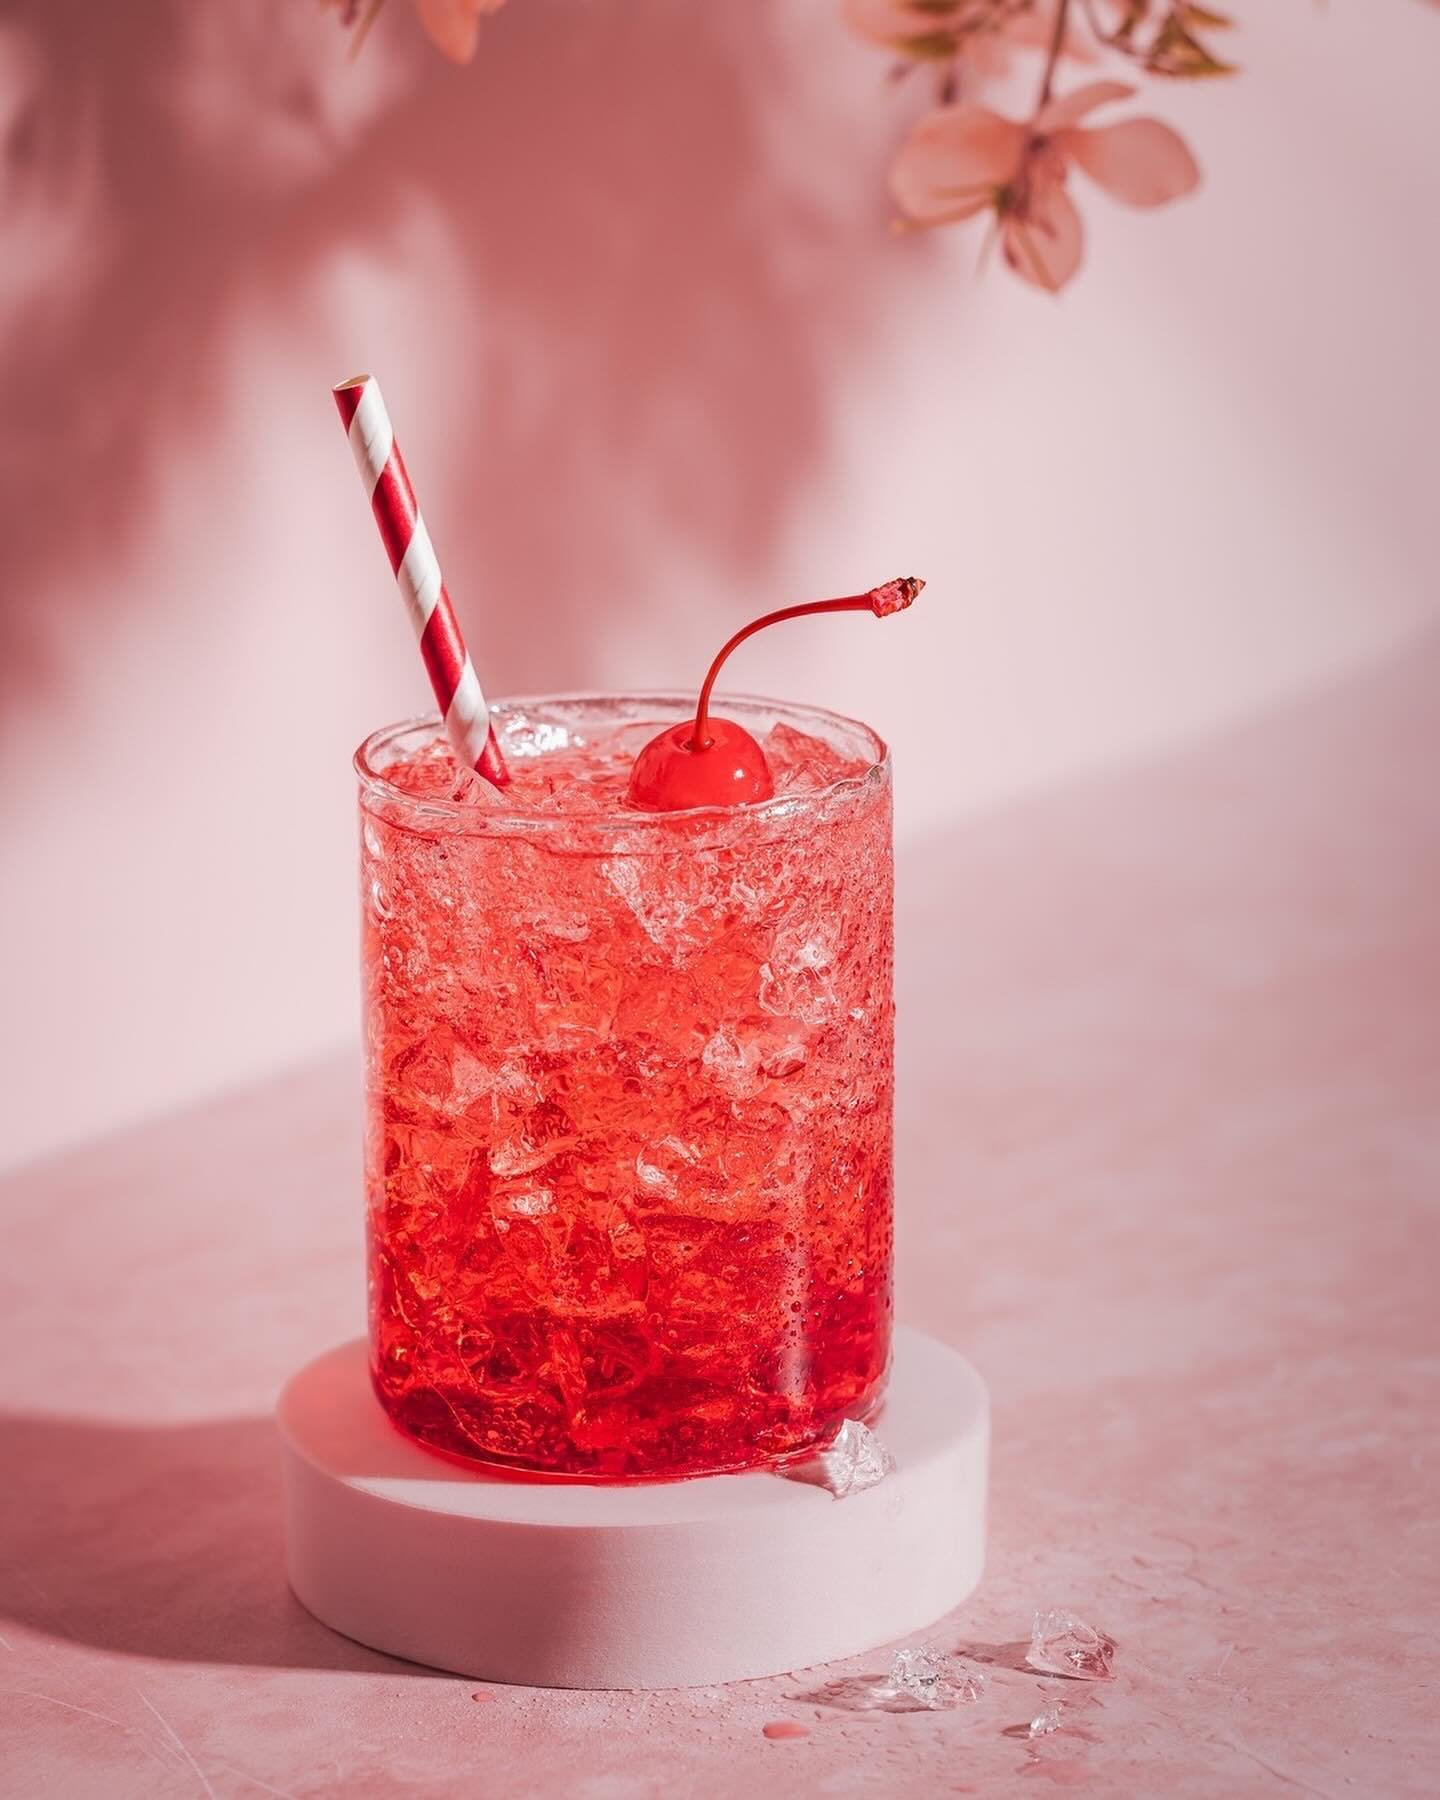 Cheers to all the amazing moms out there! 🍹🍒
⠀⠀⠀⠀⠀⠀⠀⠀⠀
Ein erfrischender Drink mit einer Cocktailkirsche als Kr&ouml;nung &ndash; perfekt, um den Muttertag zu feiern. 
📸 Welches Bild ist dein Favorit:  Bild 1 oder Bild 2? 
⠀⠀⠀⠀⠀⠀⠀⠀⠀
#beveragephoto